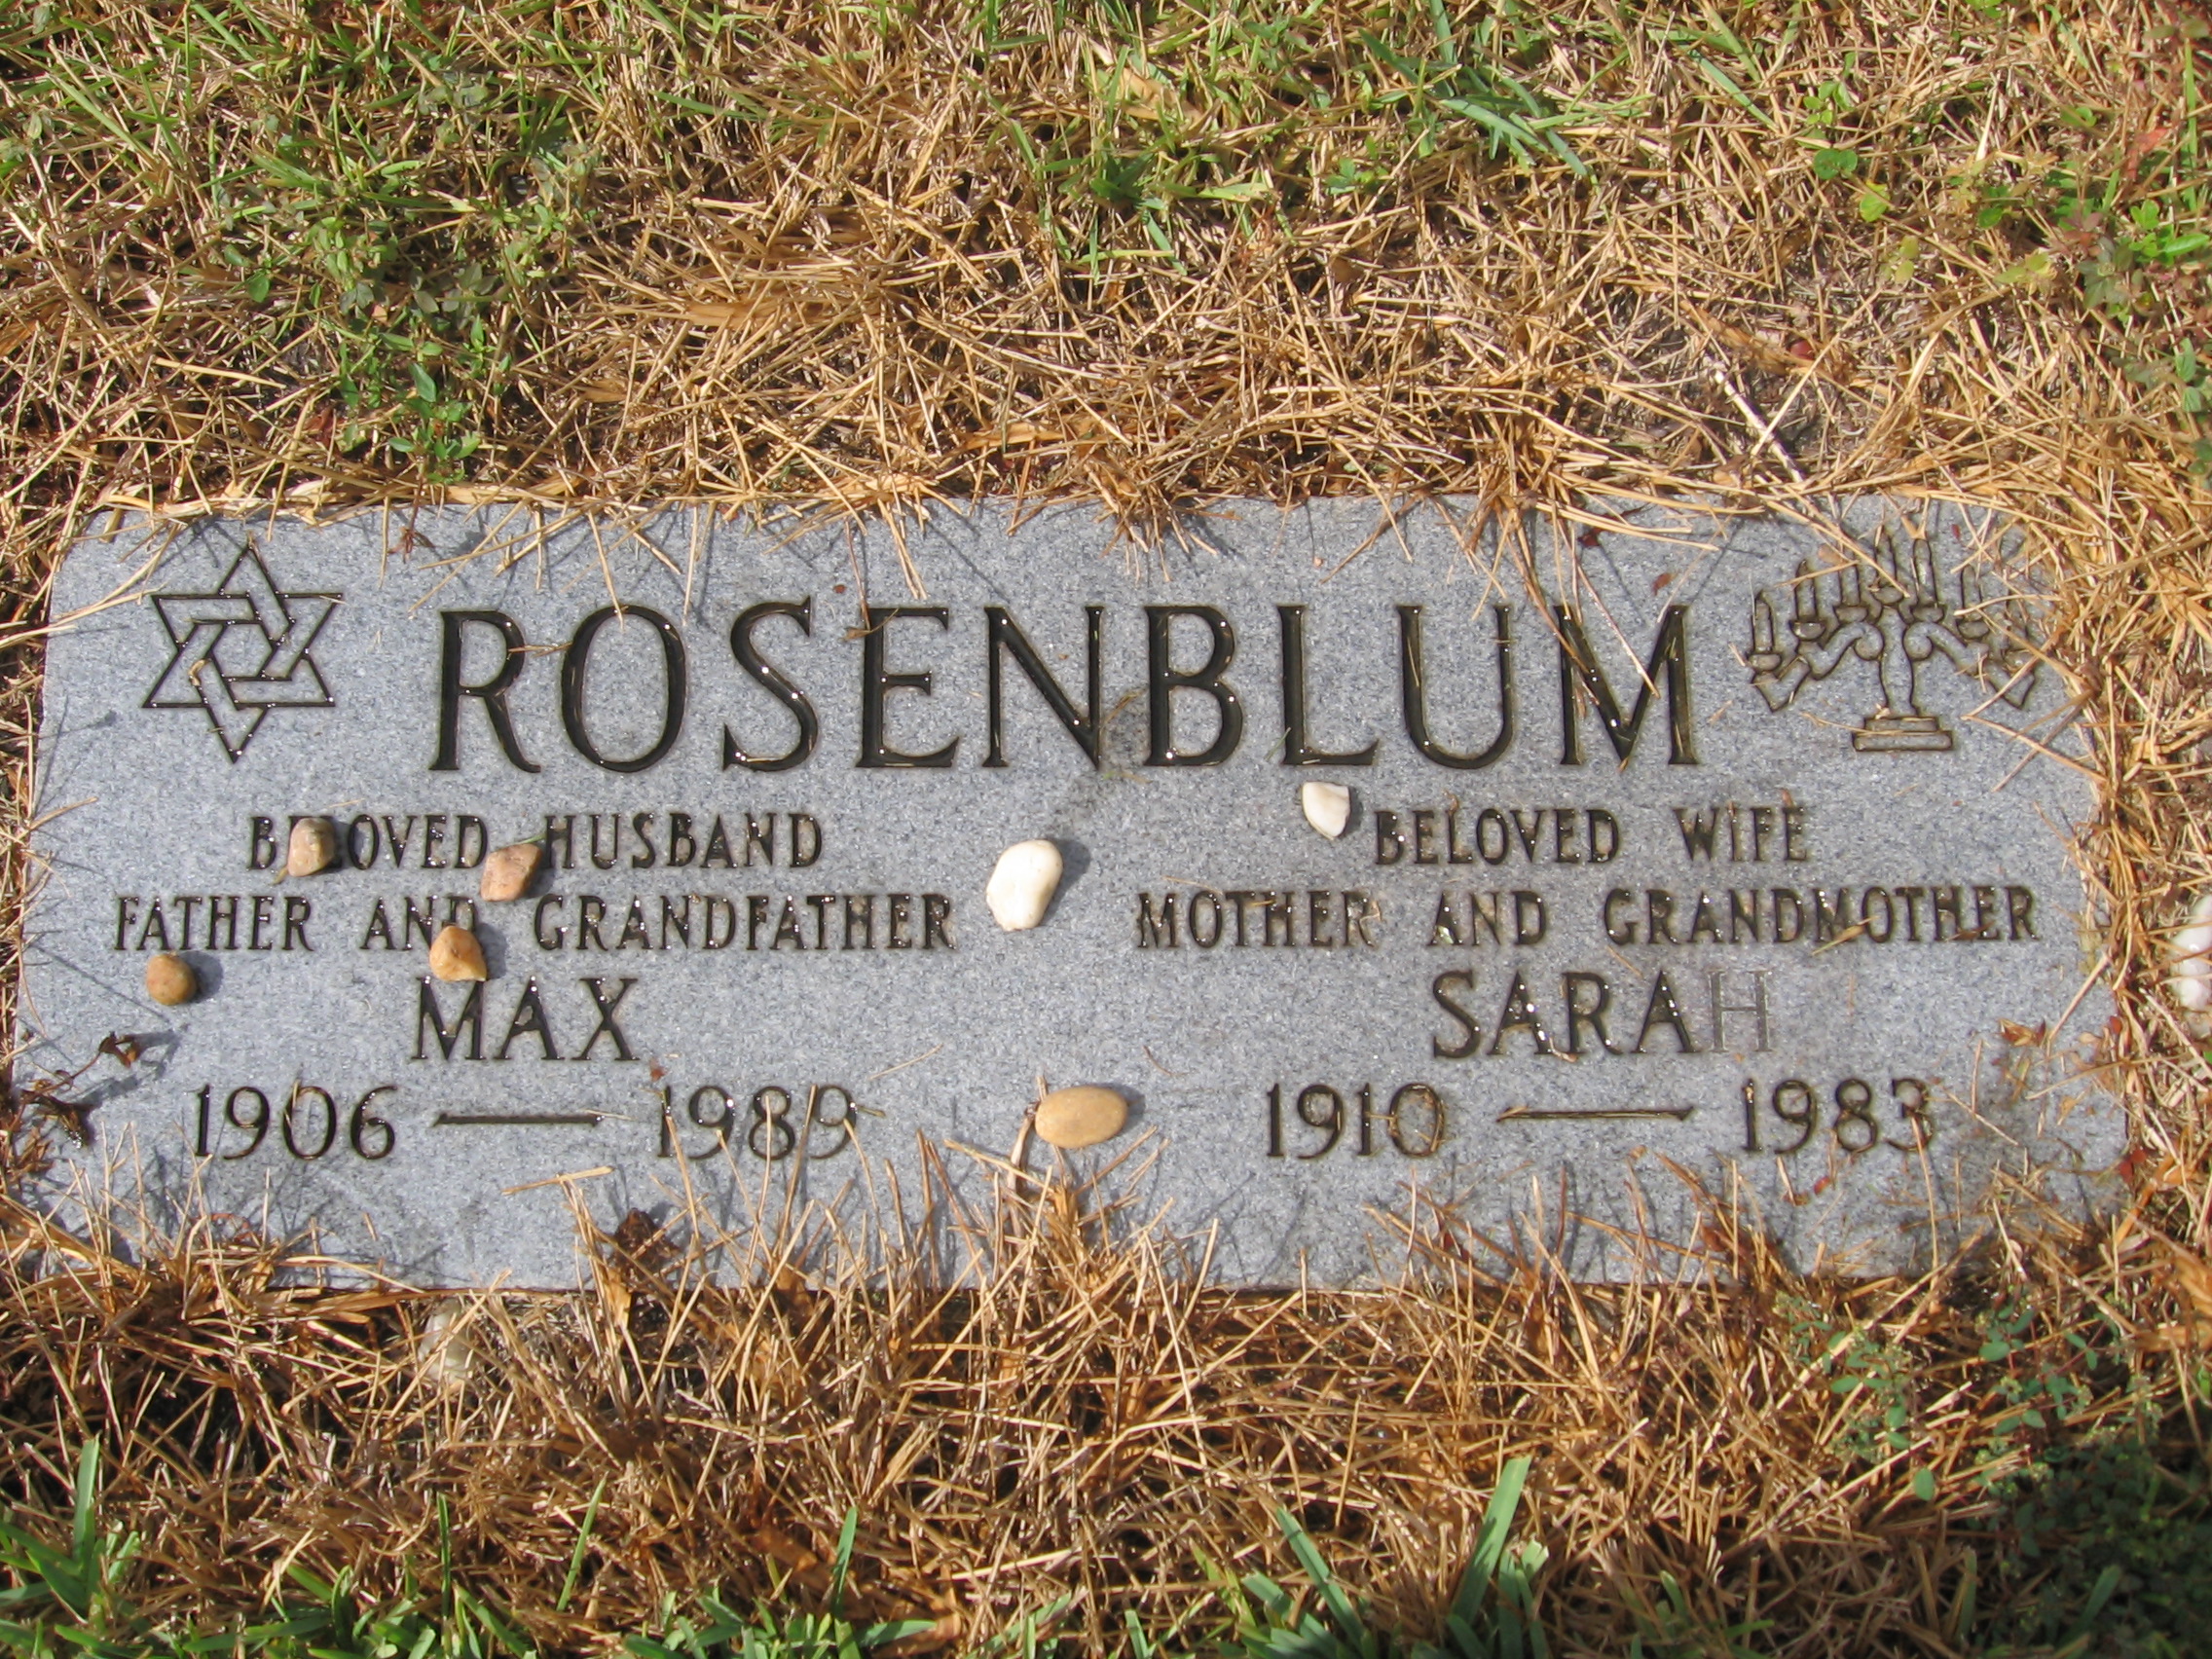 Max Rosenblum